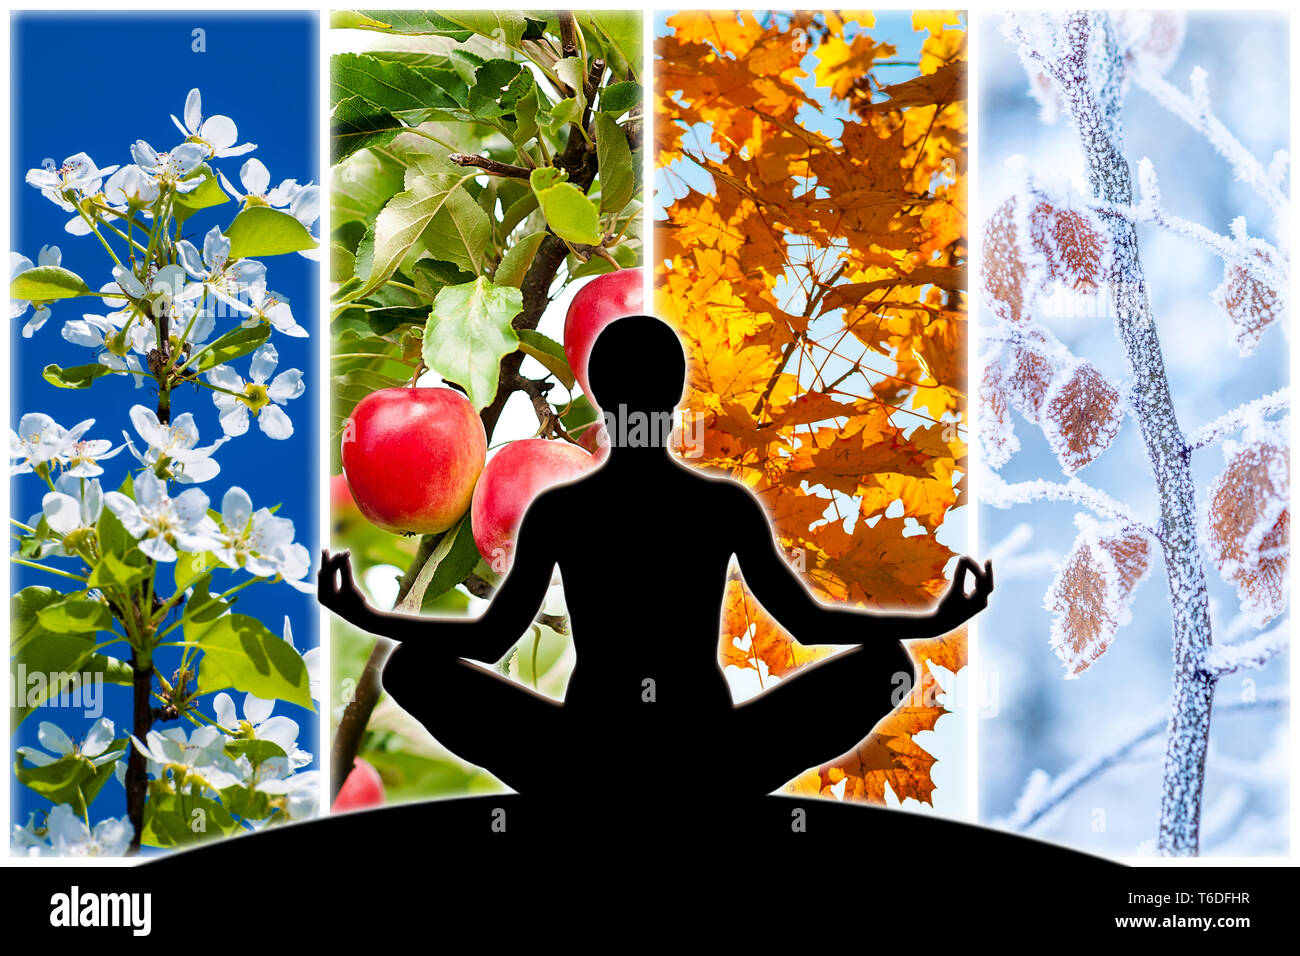 Yoga femmina figura silhouette contro il collage di quattro immagini che rappresentano ogni Stagione: Primavera, estate, autunno e inverno. Foto Stock